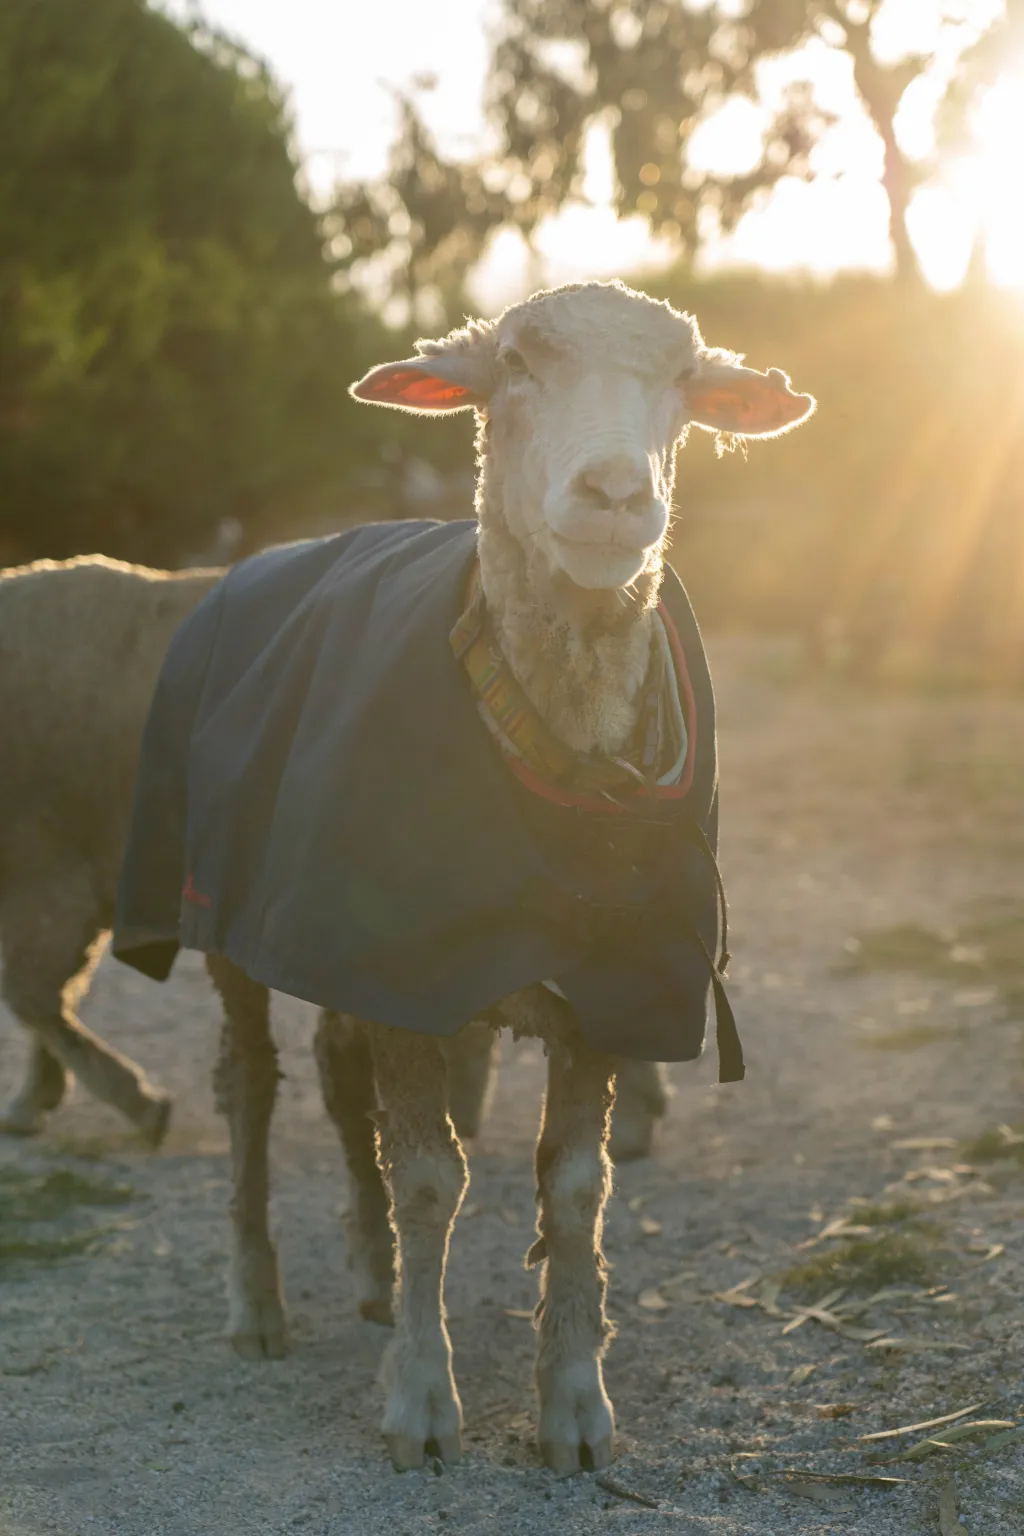 U nových majitelů se zdá být ovce Baarack velmi spokojená a postupně se na farmě zabydluje u dalších zachráněných ovcí